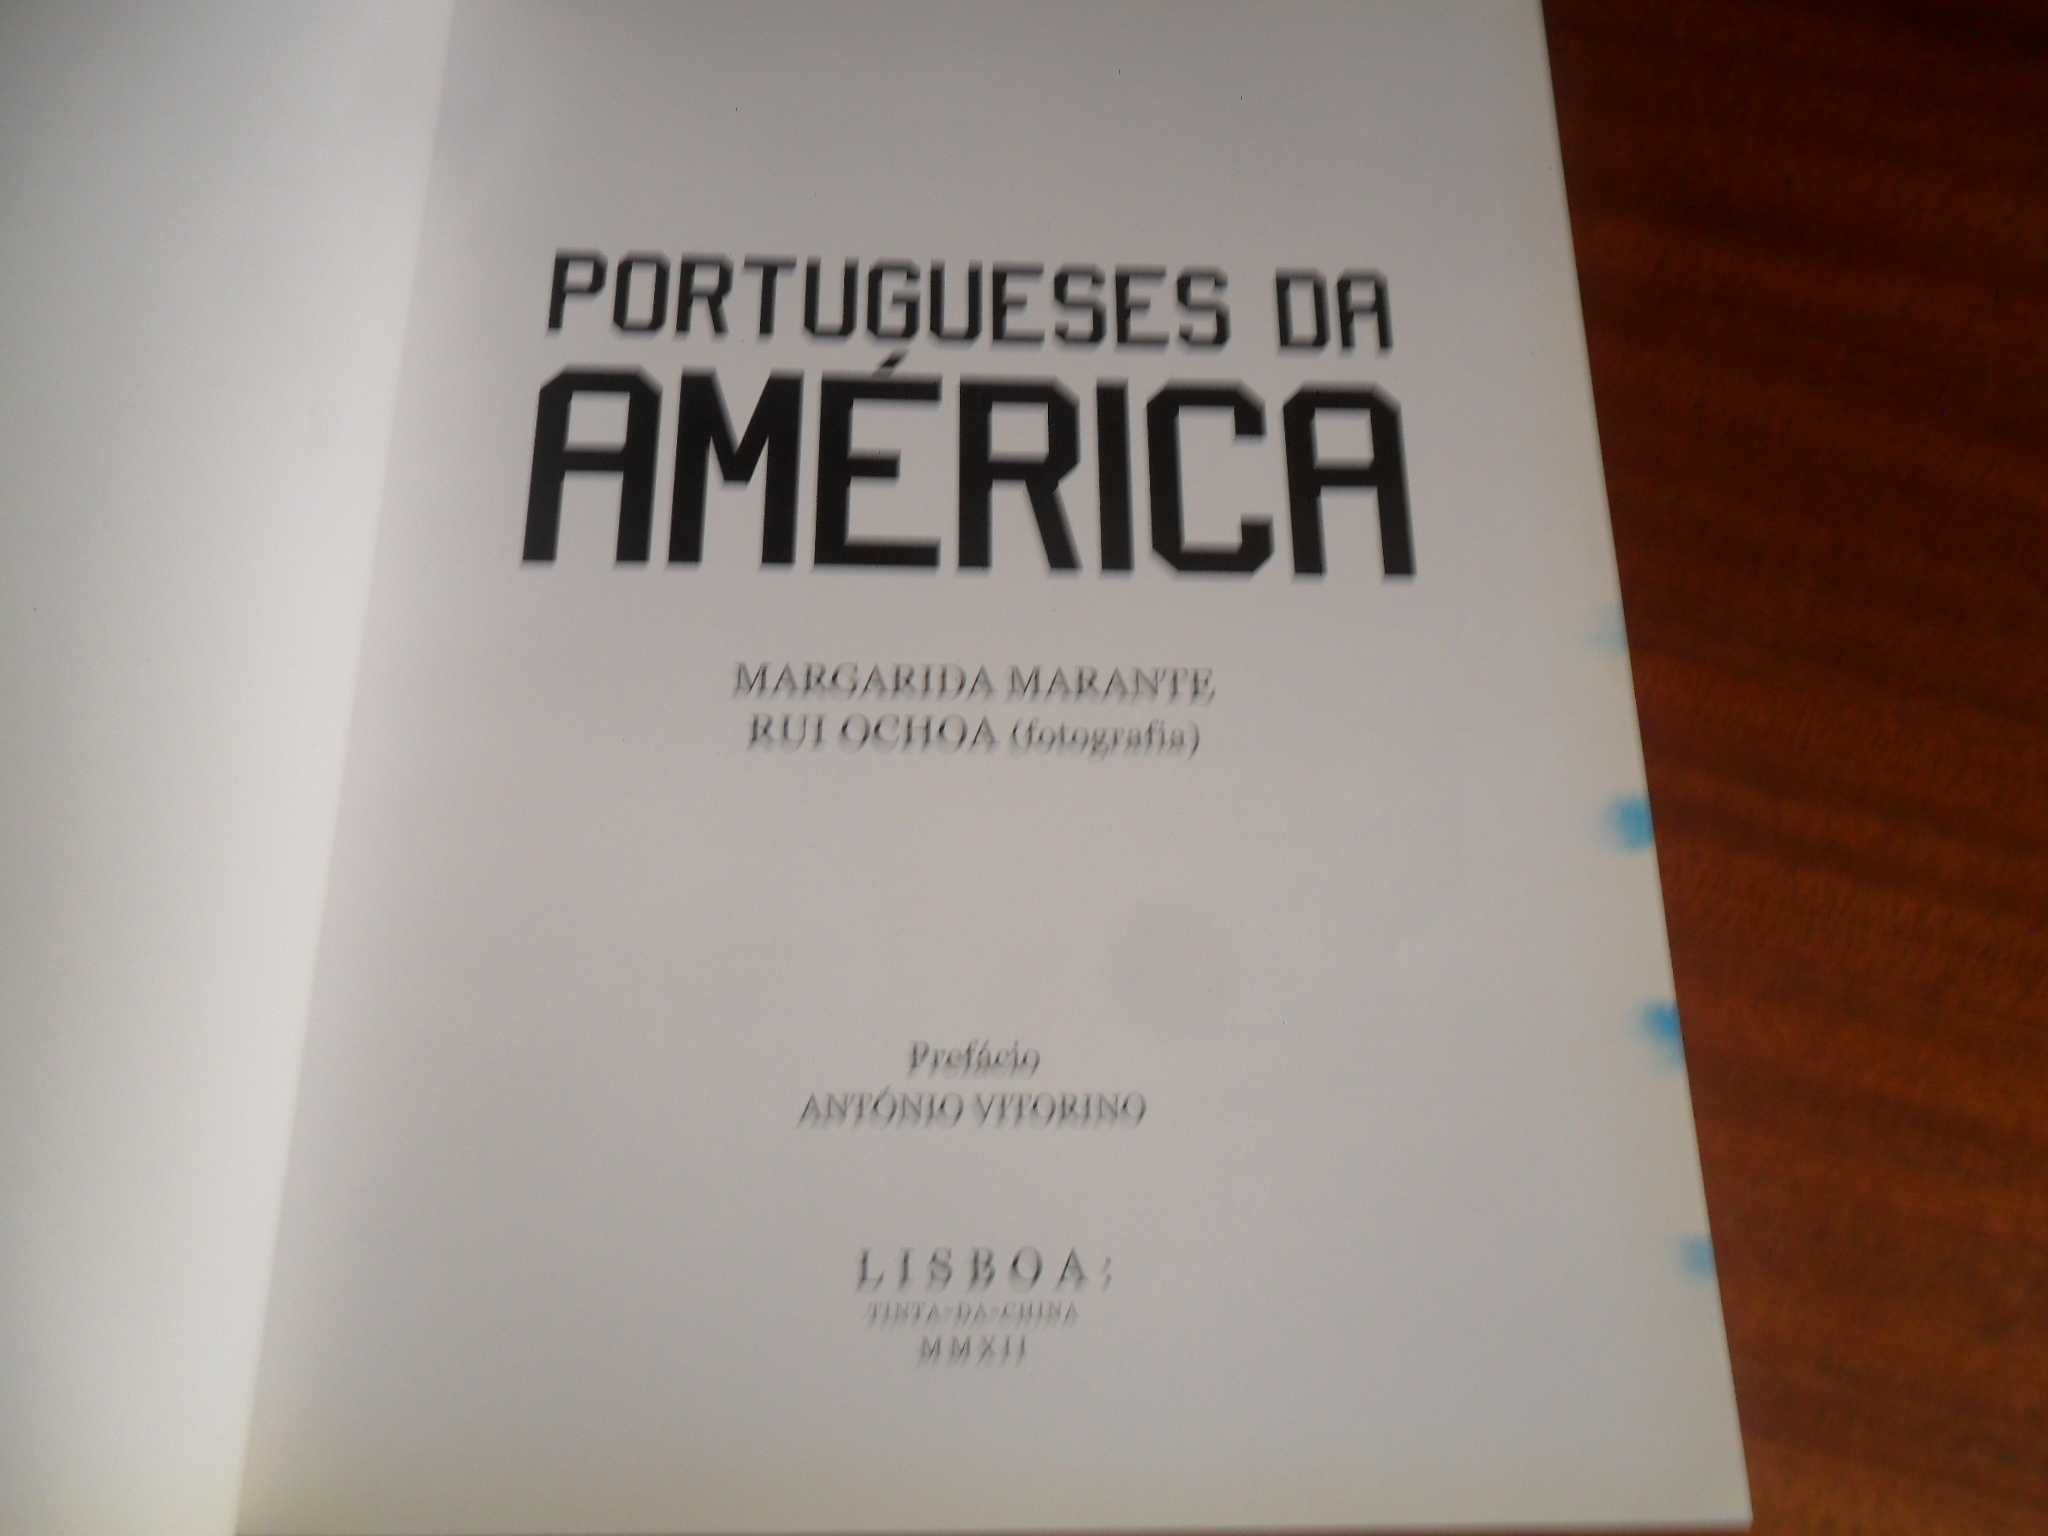 "Portugueses da América" de Margarida Marante - 1ª Edição de 2012